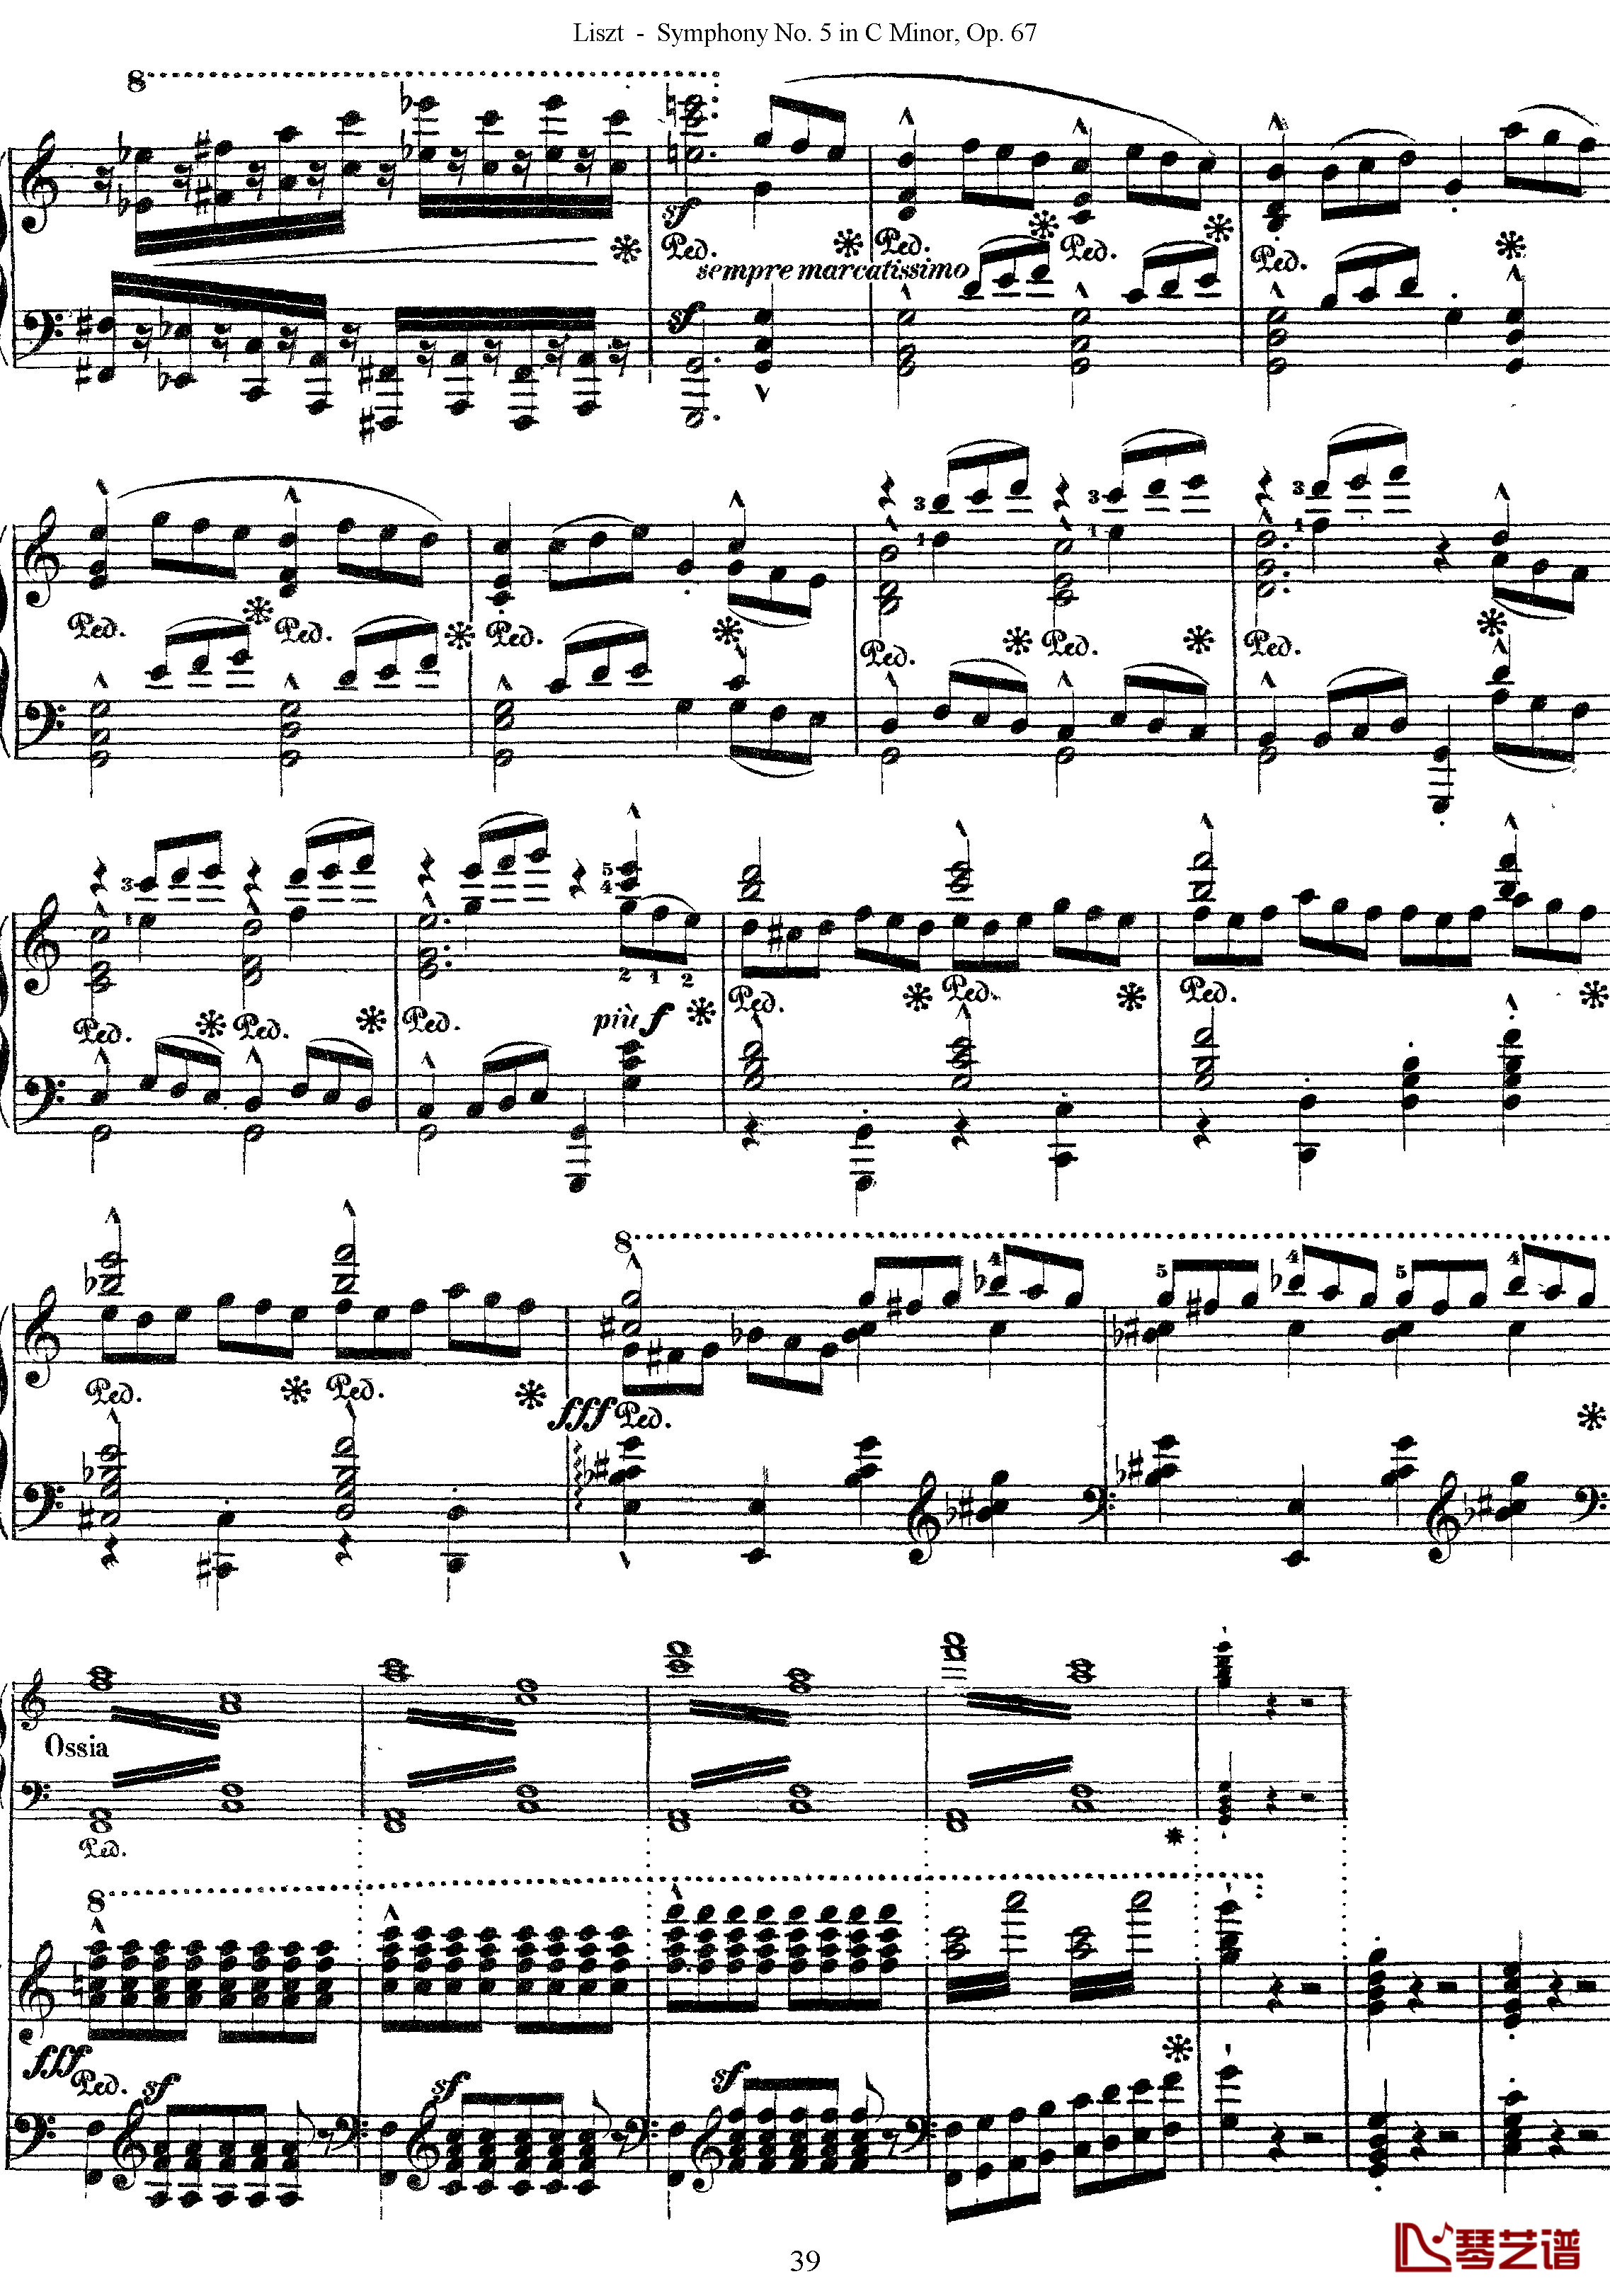 第五交响乐的钢琴曲钢琴谱-李斯特-李斯特改编自贝多芬39